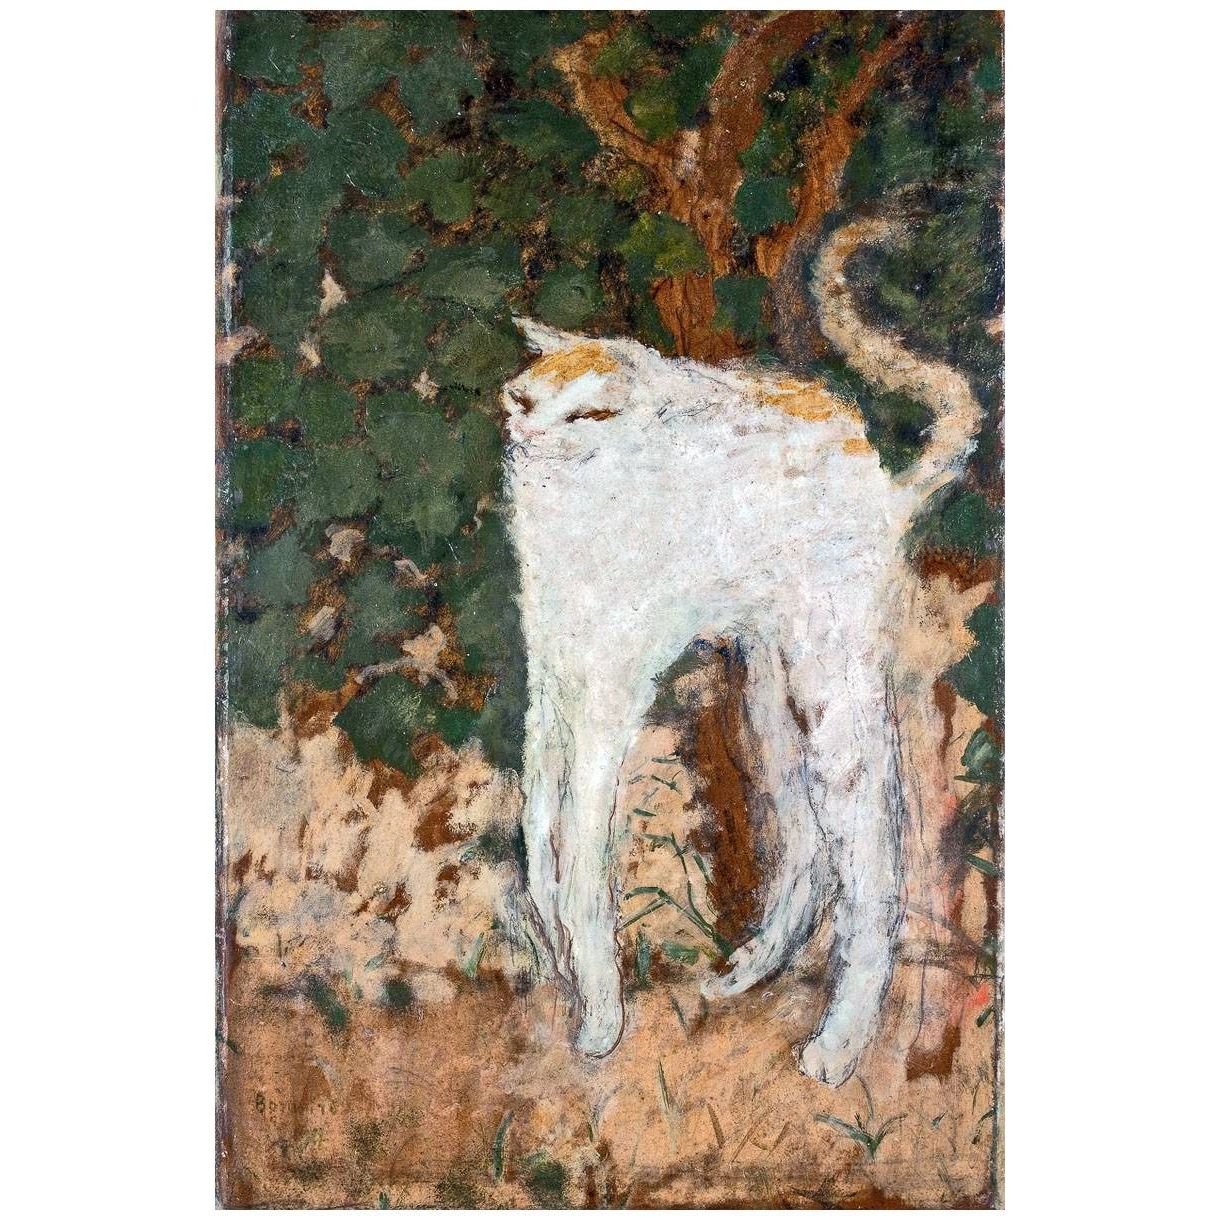 Pierre Bonnard. Le chat blanc. 1894. Musee d’Orsay Paris